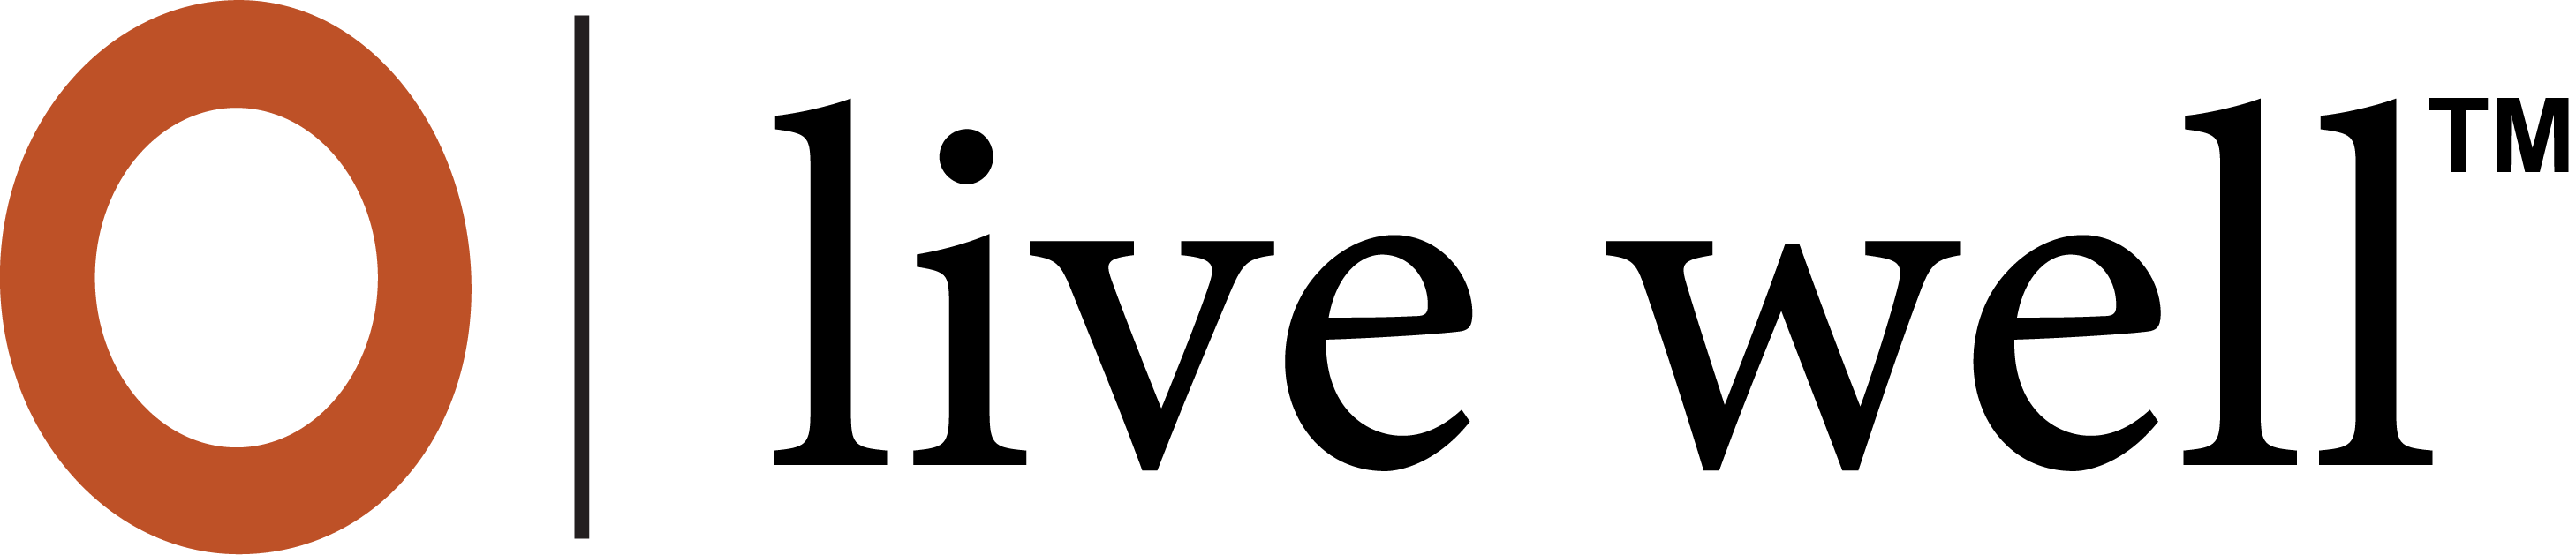 the_olinger_group_logo_horizontal_orange_black-1